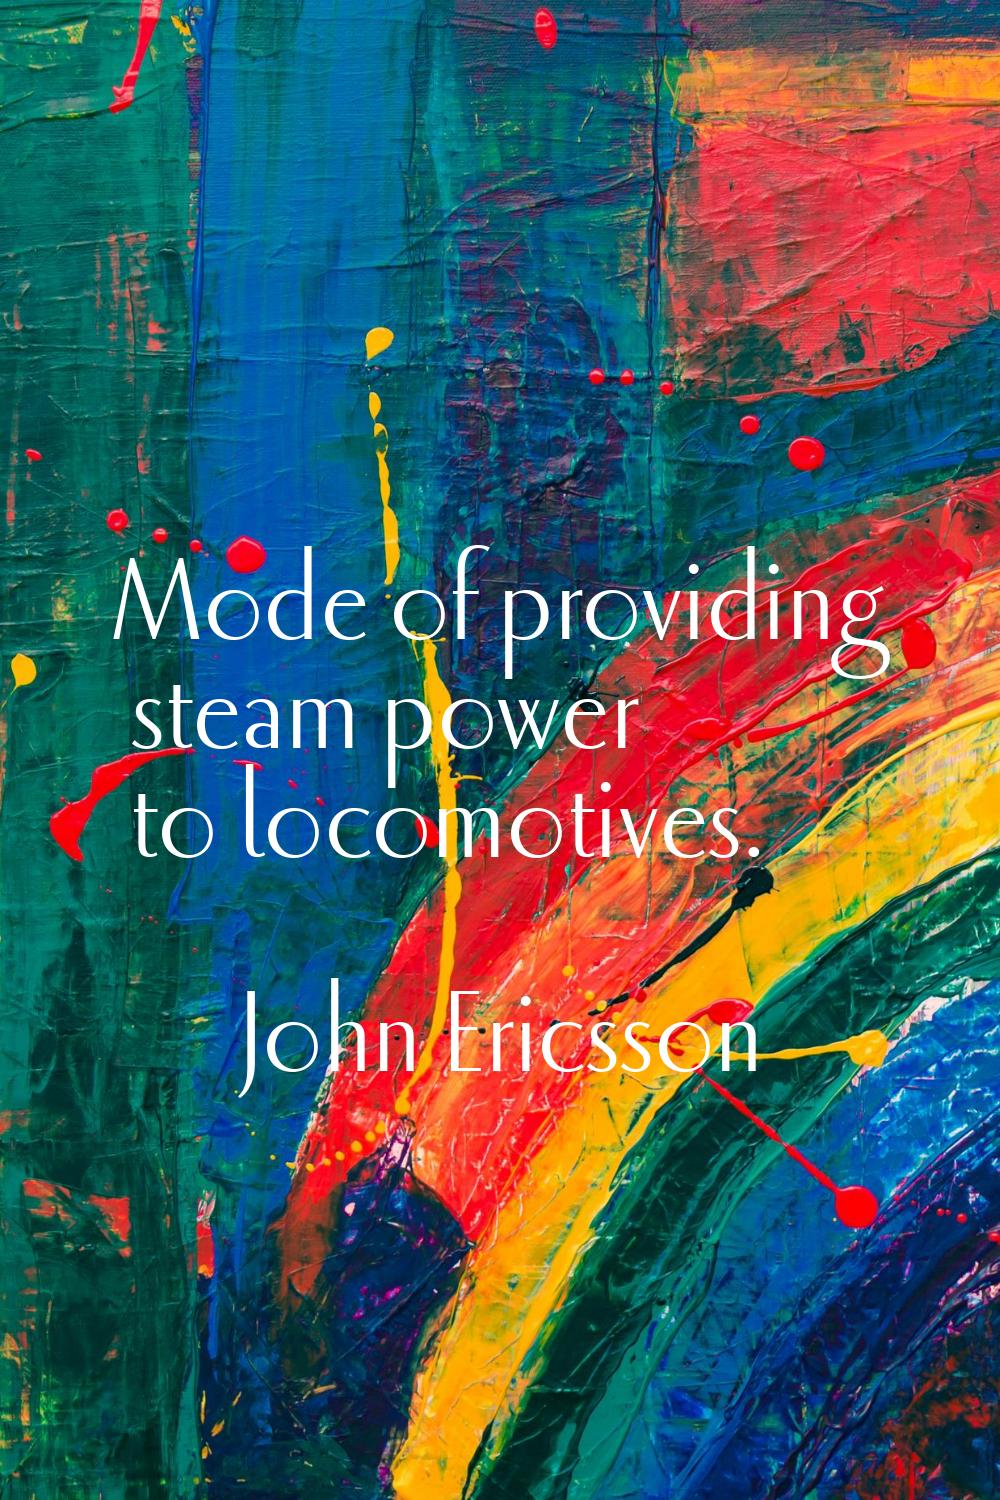 Mode of providing steam power to locomotives.